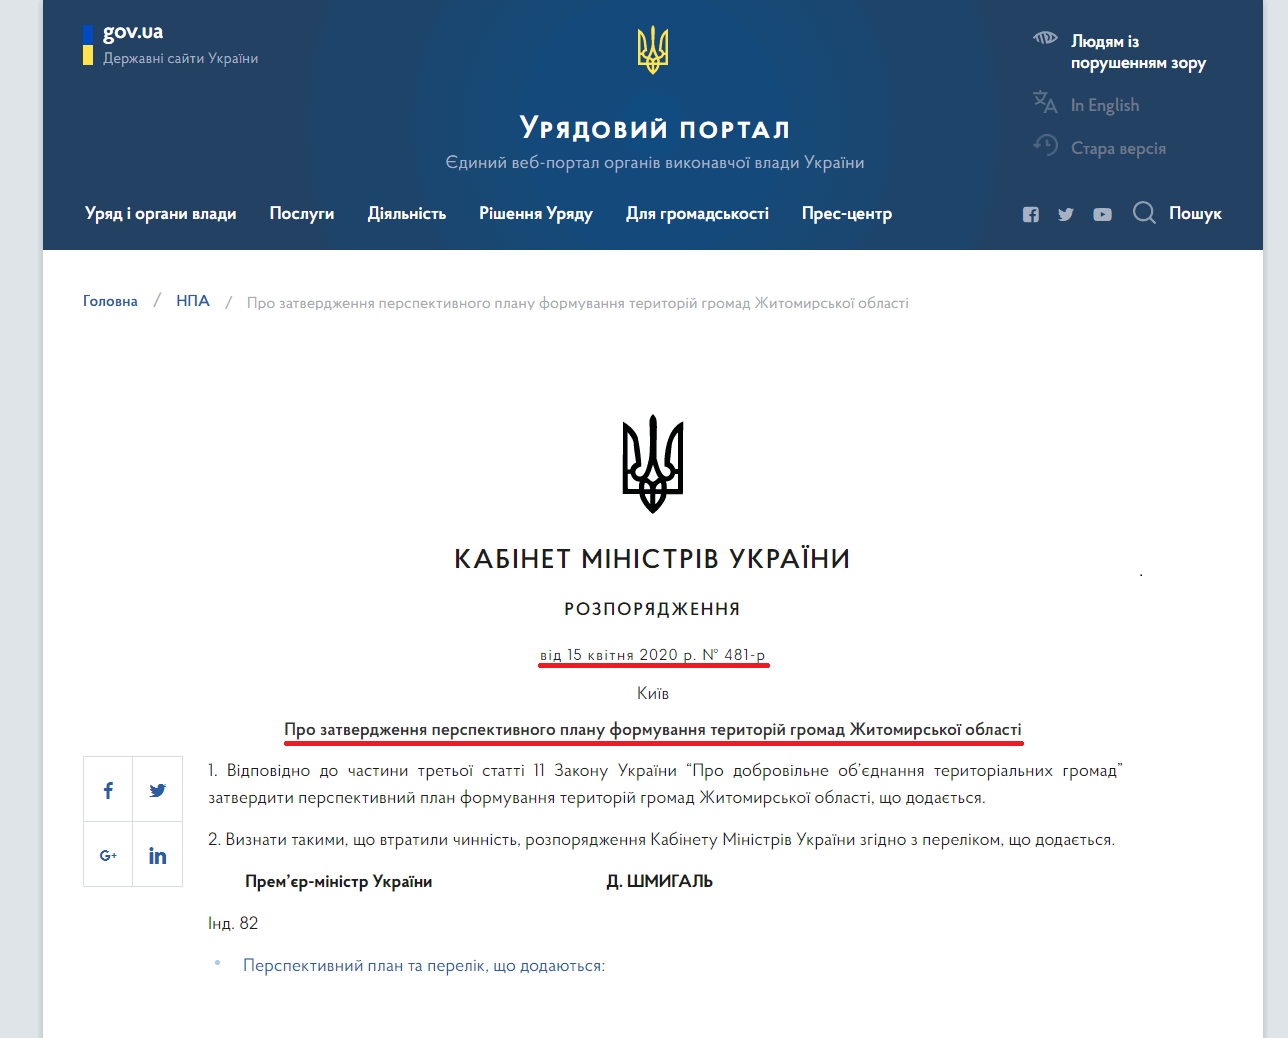 https://www.kmu.gov.ua/npas/pro-zatverdzhennya-perspektivnogo-planu-formuvannya-teritorij-gromad-zhitomirskoyi-oblasti-i150420-481